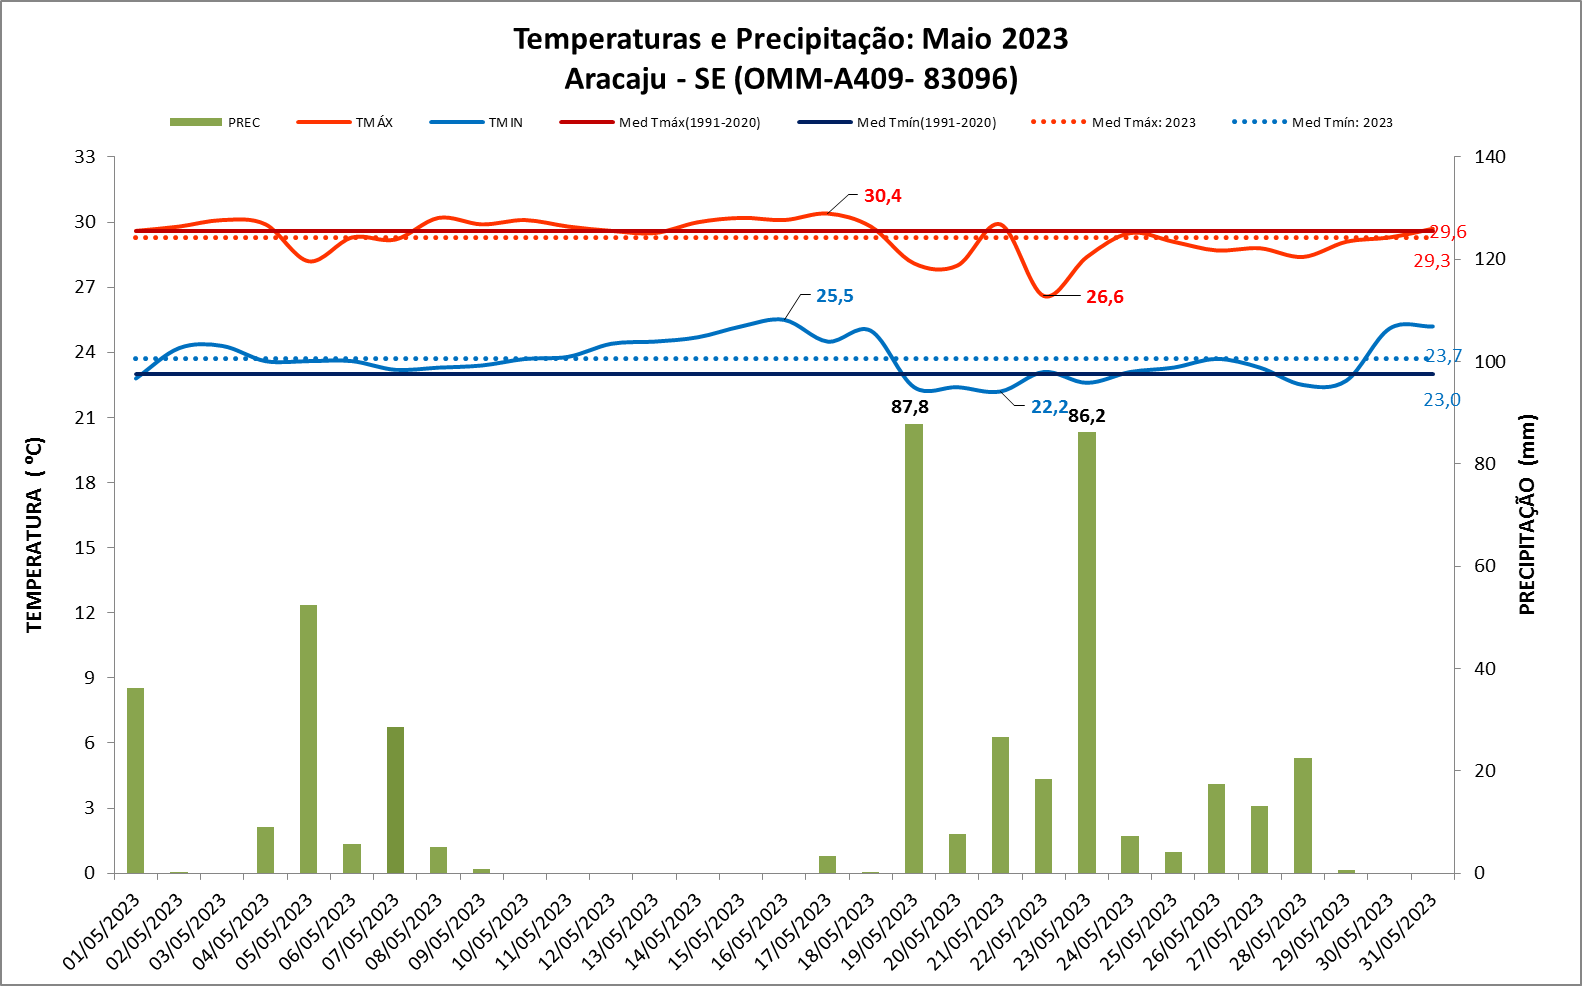 Balanço: Aracaju (SE) teve chuvas 91% acima da média em maio de 2023